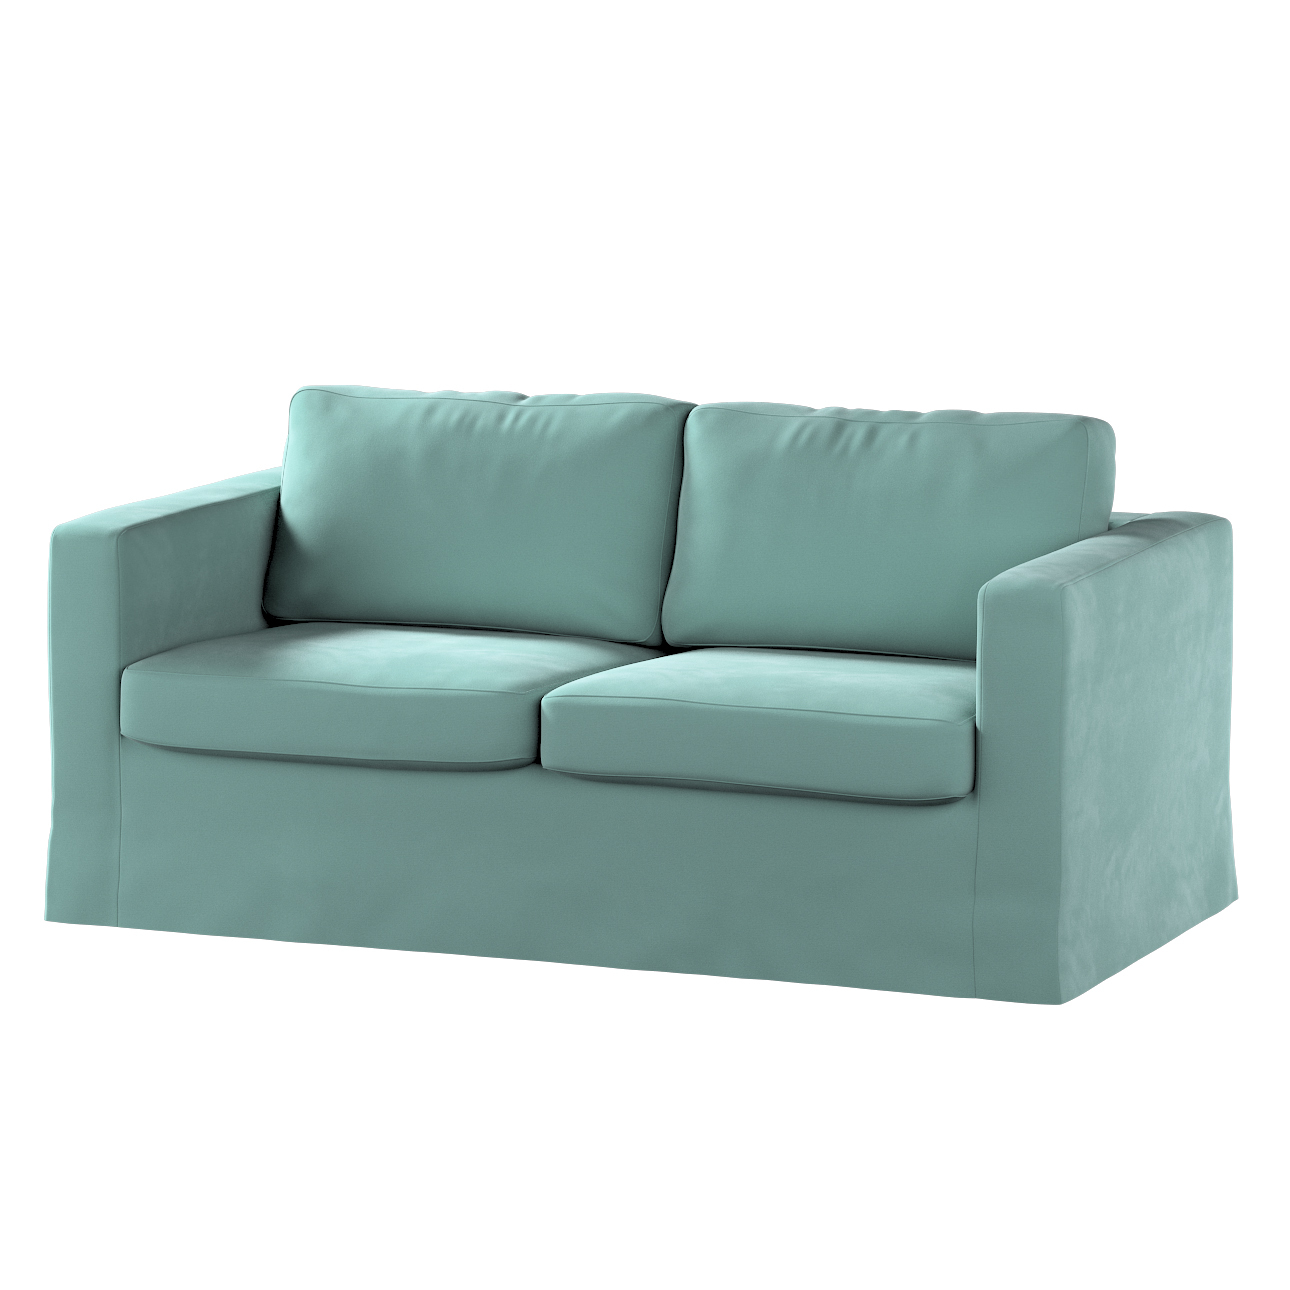 Bezug für Karlstad 2-Sitzer Sofa nicht ausklappbar, lang, mintgrün, Sofahus günstig online kaufen